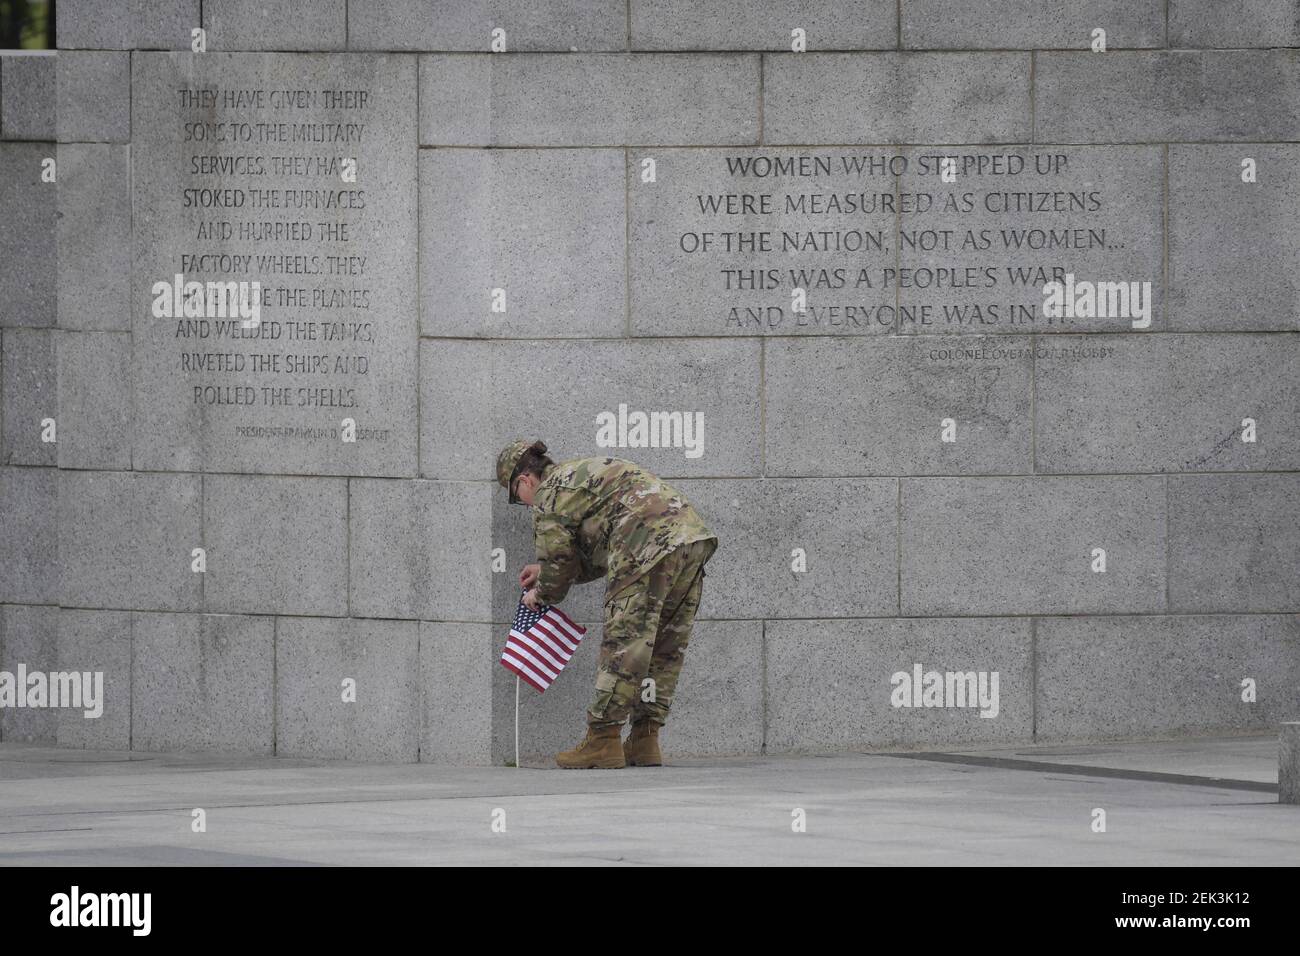 25 de mayo de 2020; Washington, DC, EE.UU.; Tsgt. USAF Janet Poit coloca una bandera estadounidense a lo largo de una pared del Monumento Nacional a la Segunda Guerra Mundial antes del inicio de una ceremonia virtual de recuerdo, ya que los eventos anuales del día de los Caídos en los monumentos conmemorativos del Parque Nacional fueron cancelados debido a la pandemia del COVID-19 el lunes, 25 de mayo de 2020. Crédito obligatorio: Jack Gruber-USA TODAY/Sipa USA Foto de stock